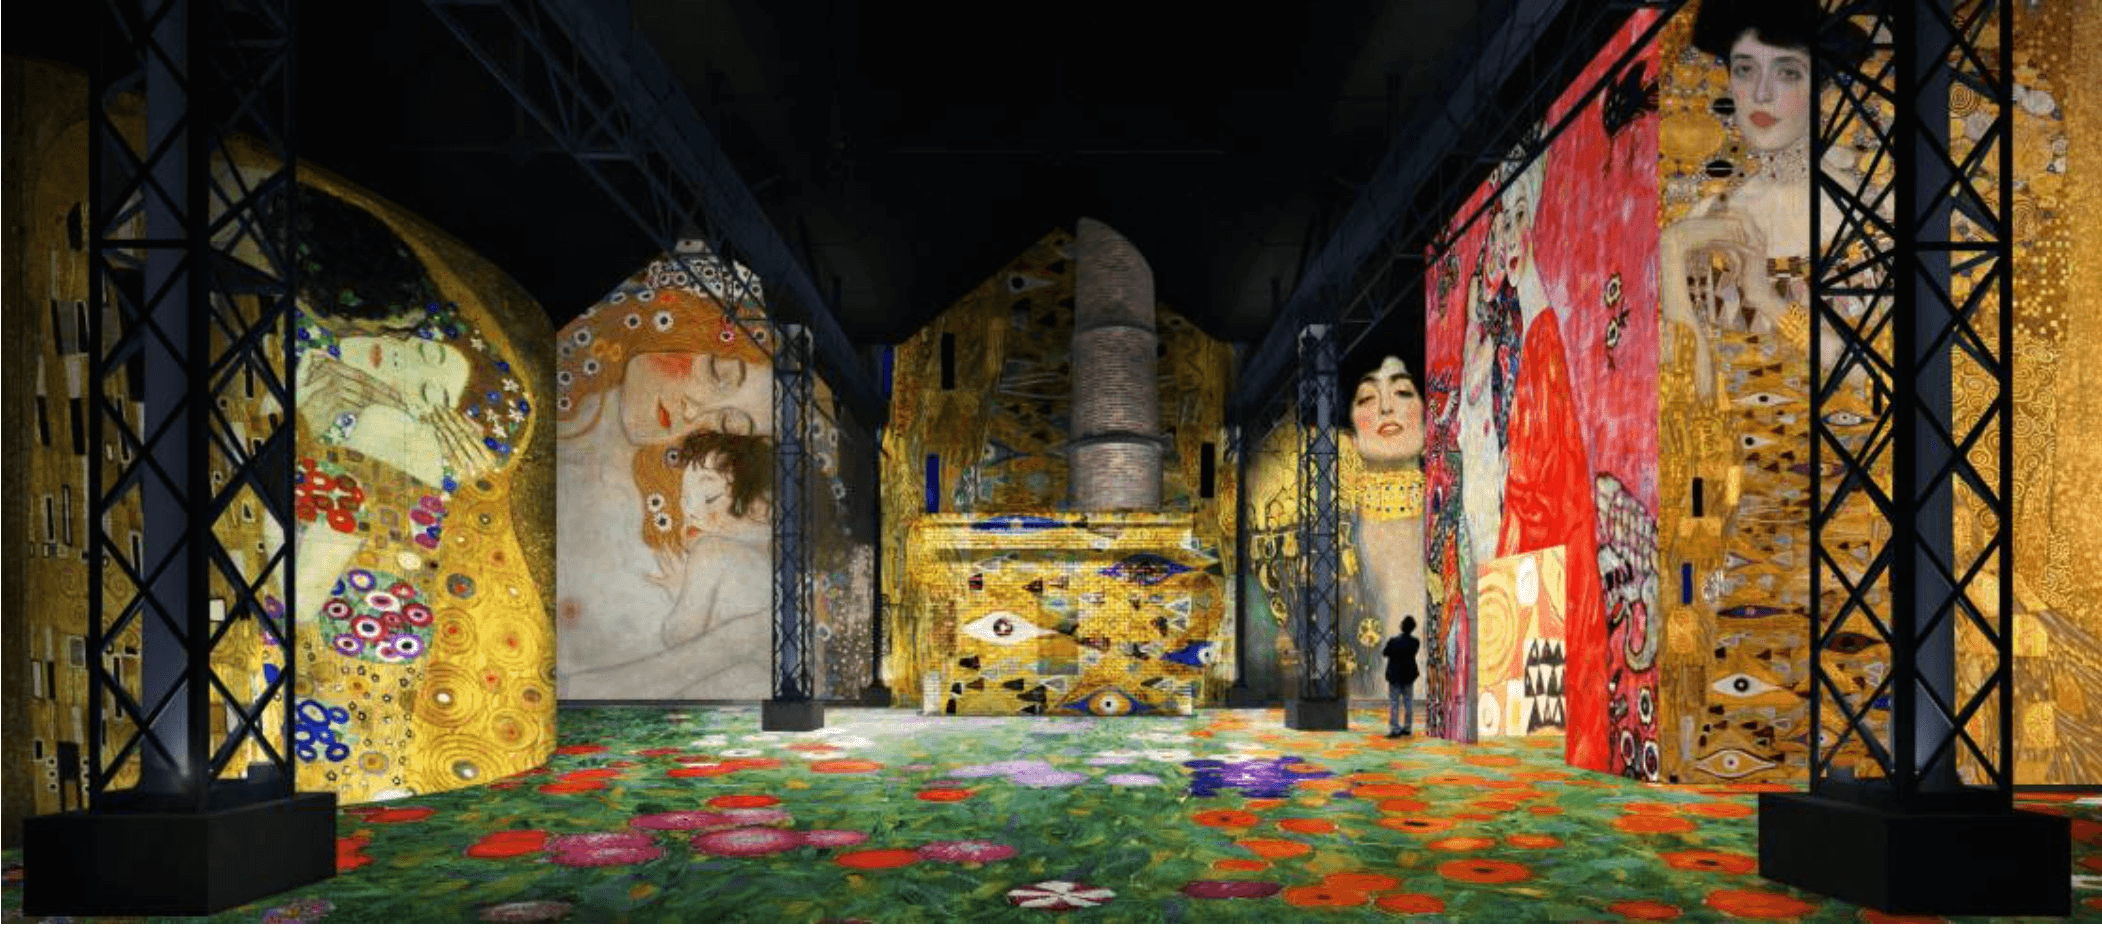 Die französische Organisation Culturespaces zeigt digitalisierte Gemälde in Ausstellungen. Hier das Meisterwerk von Gustav Klimt. Foto: Culturespaces - Nuit de Chine